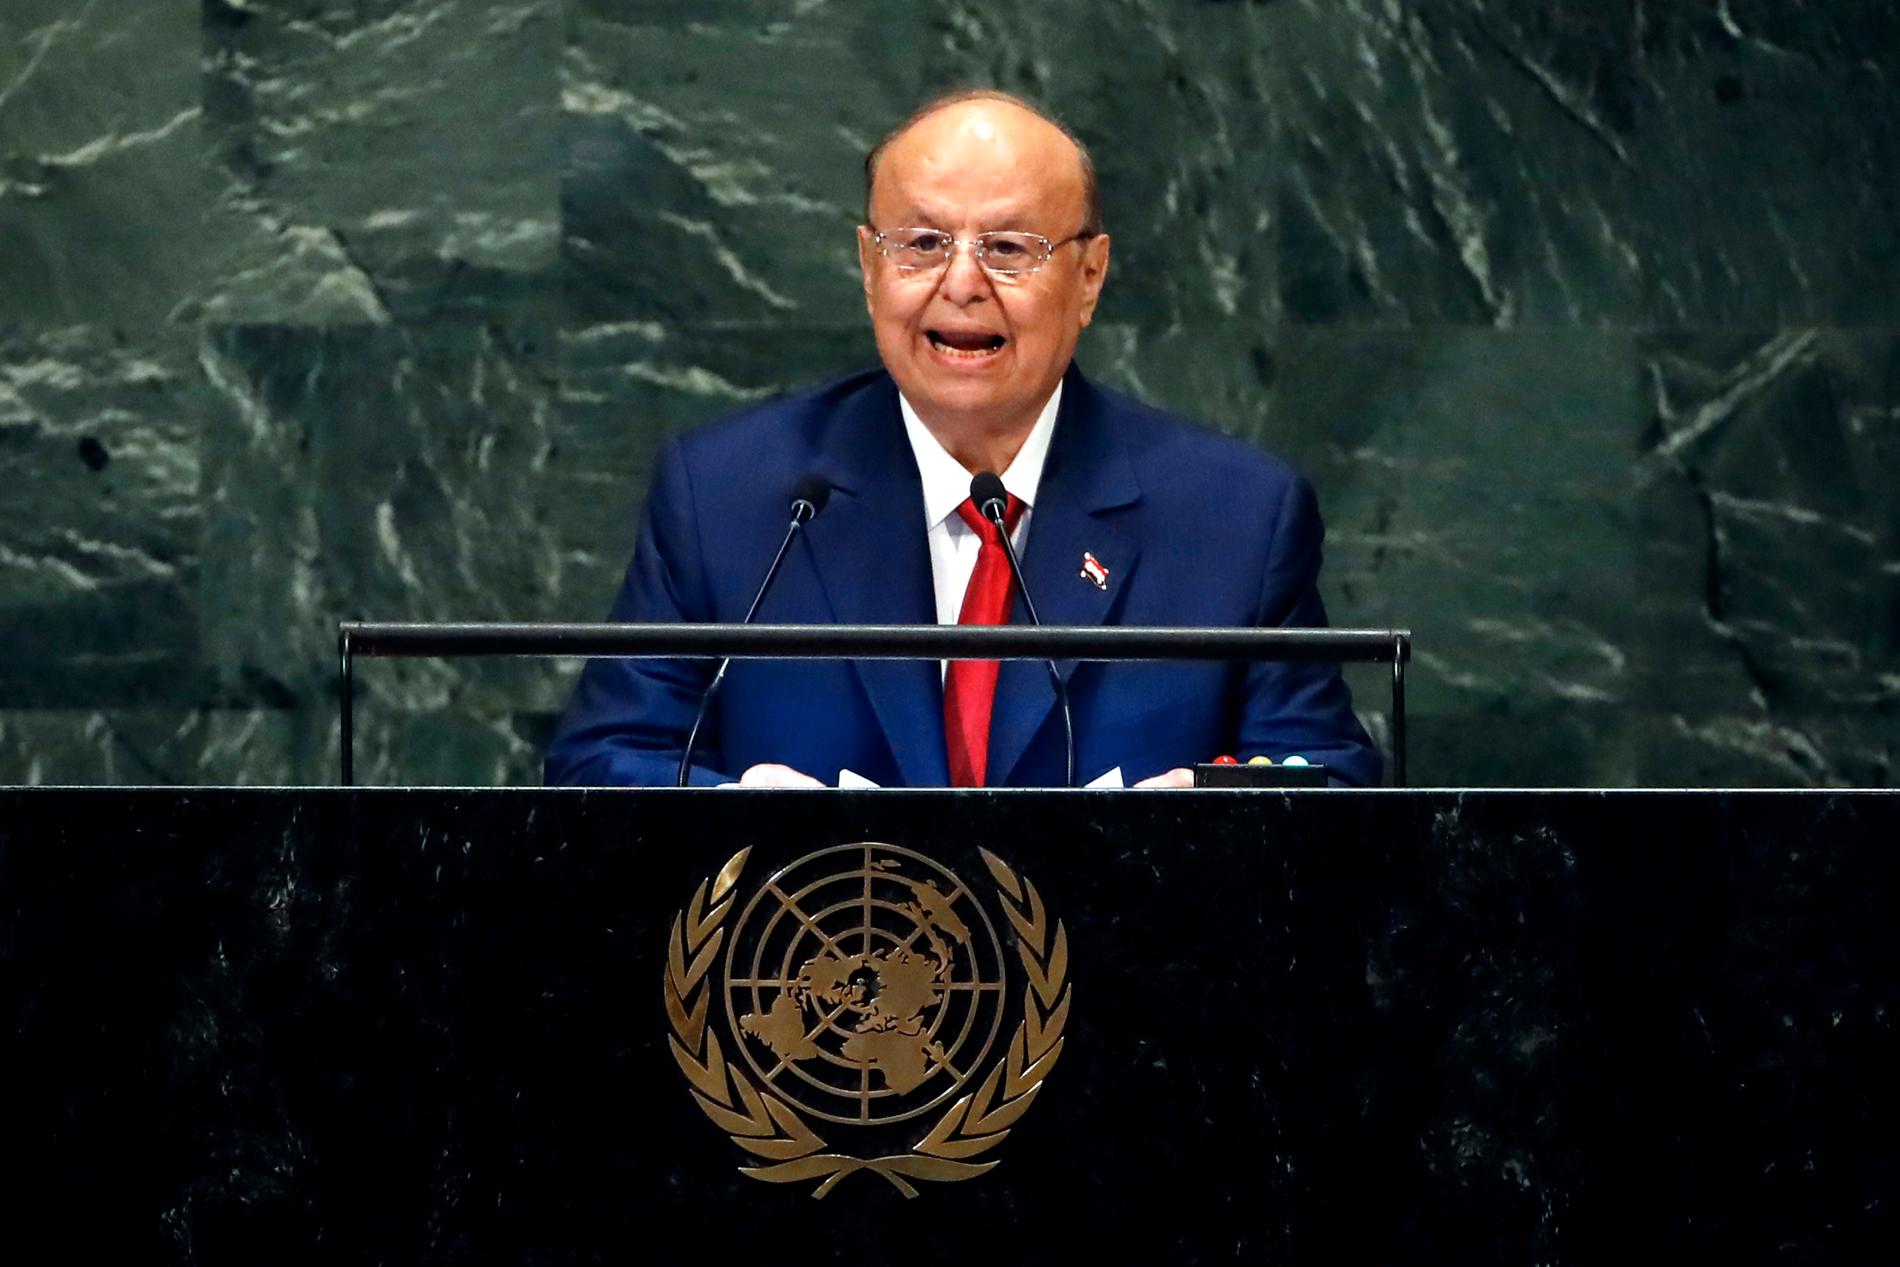 Abd Rabu Mansur Hadi, president i Jemens internationellt erkända regering, under FN:s generalförsamling i New York i fjol.